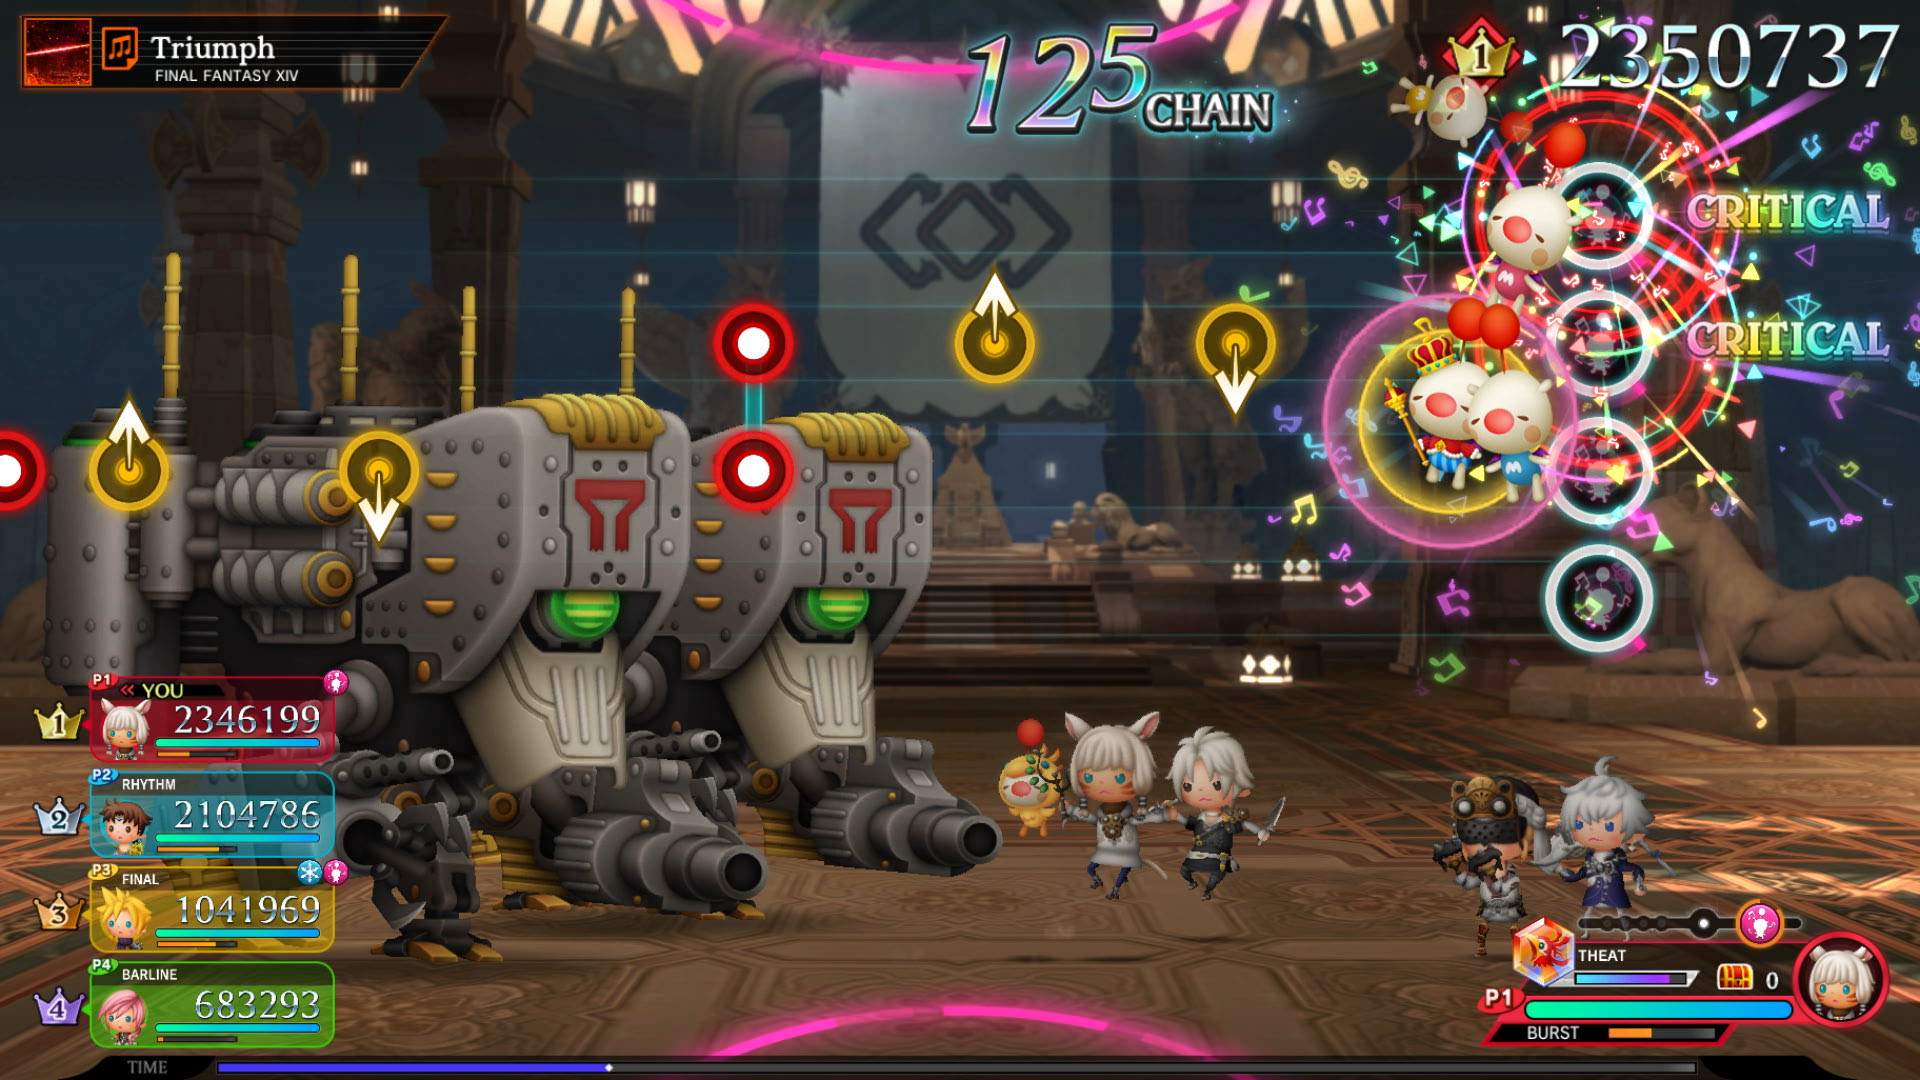 Gameplay-Screenshot eines Kampfs zur Musik von „Triumph“ aus FINAL FANTASY 14.